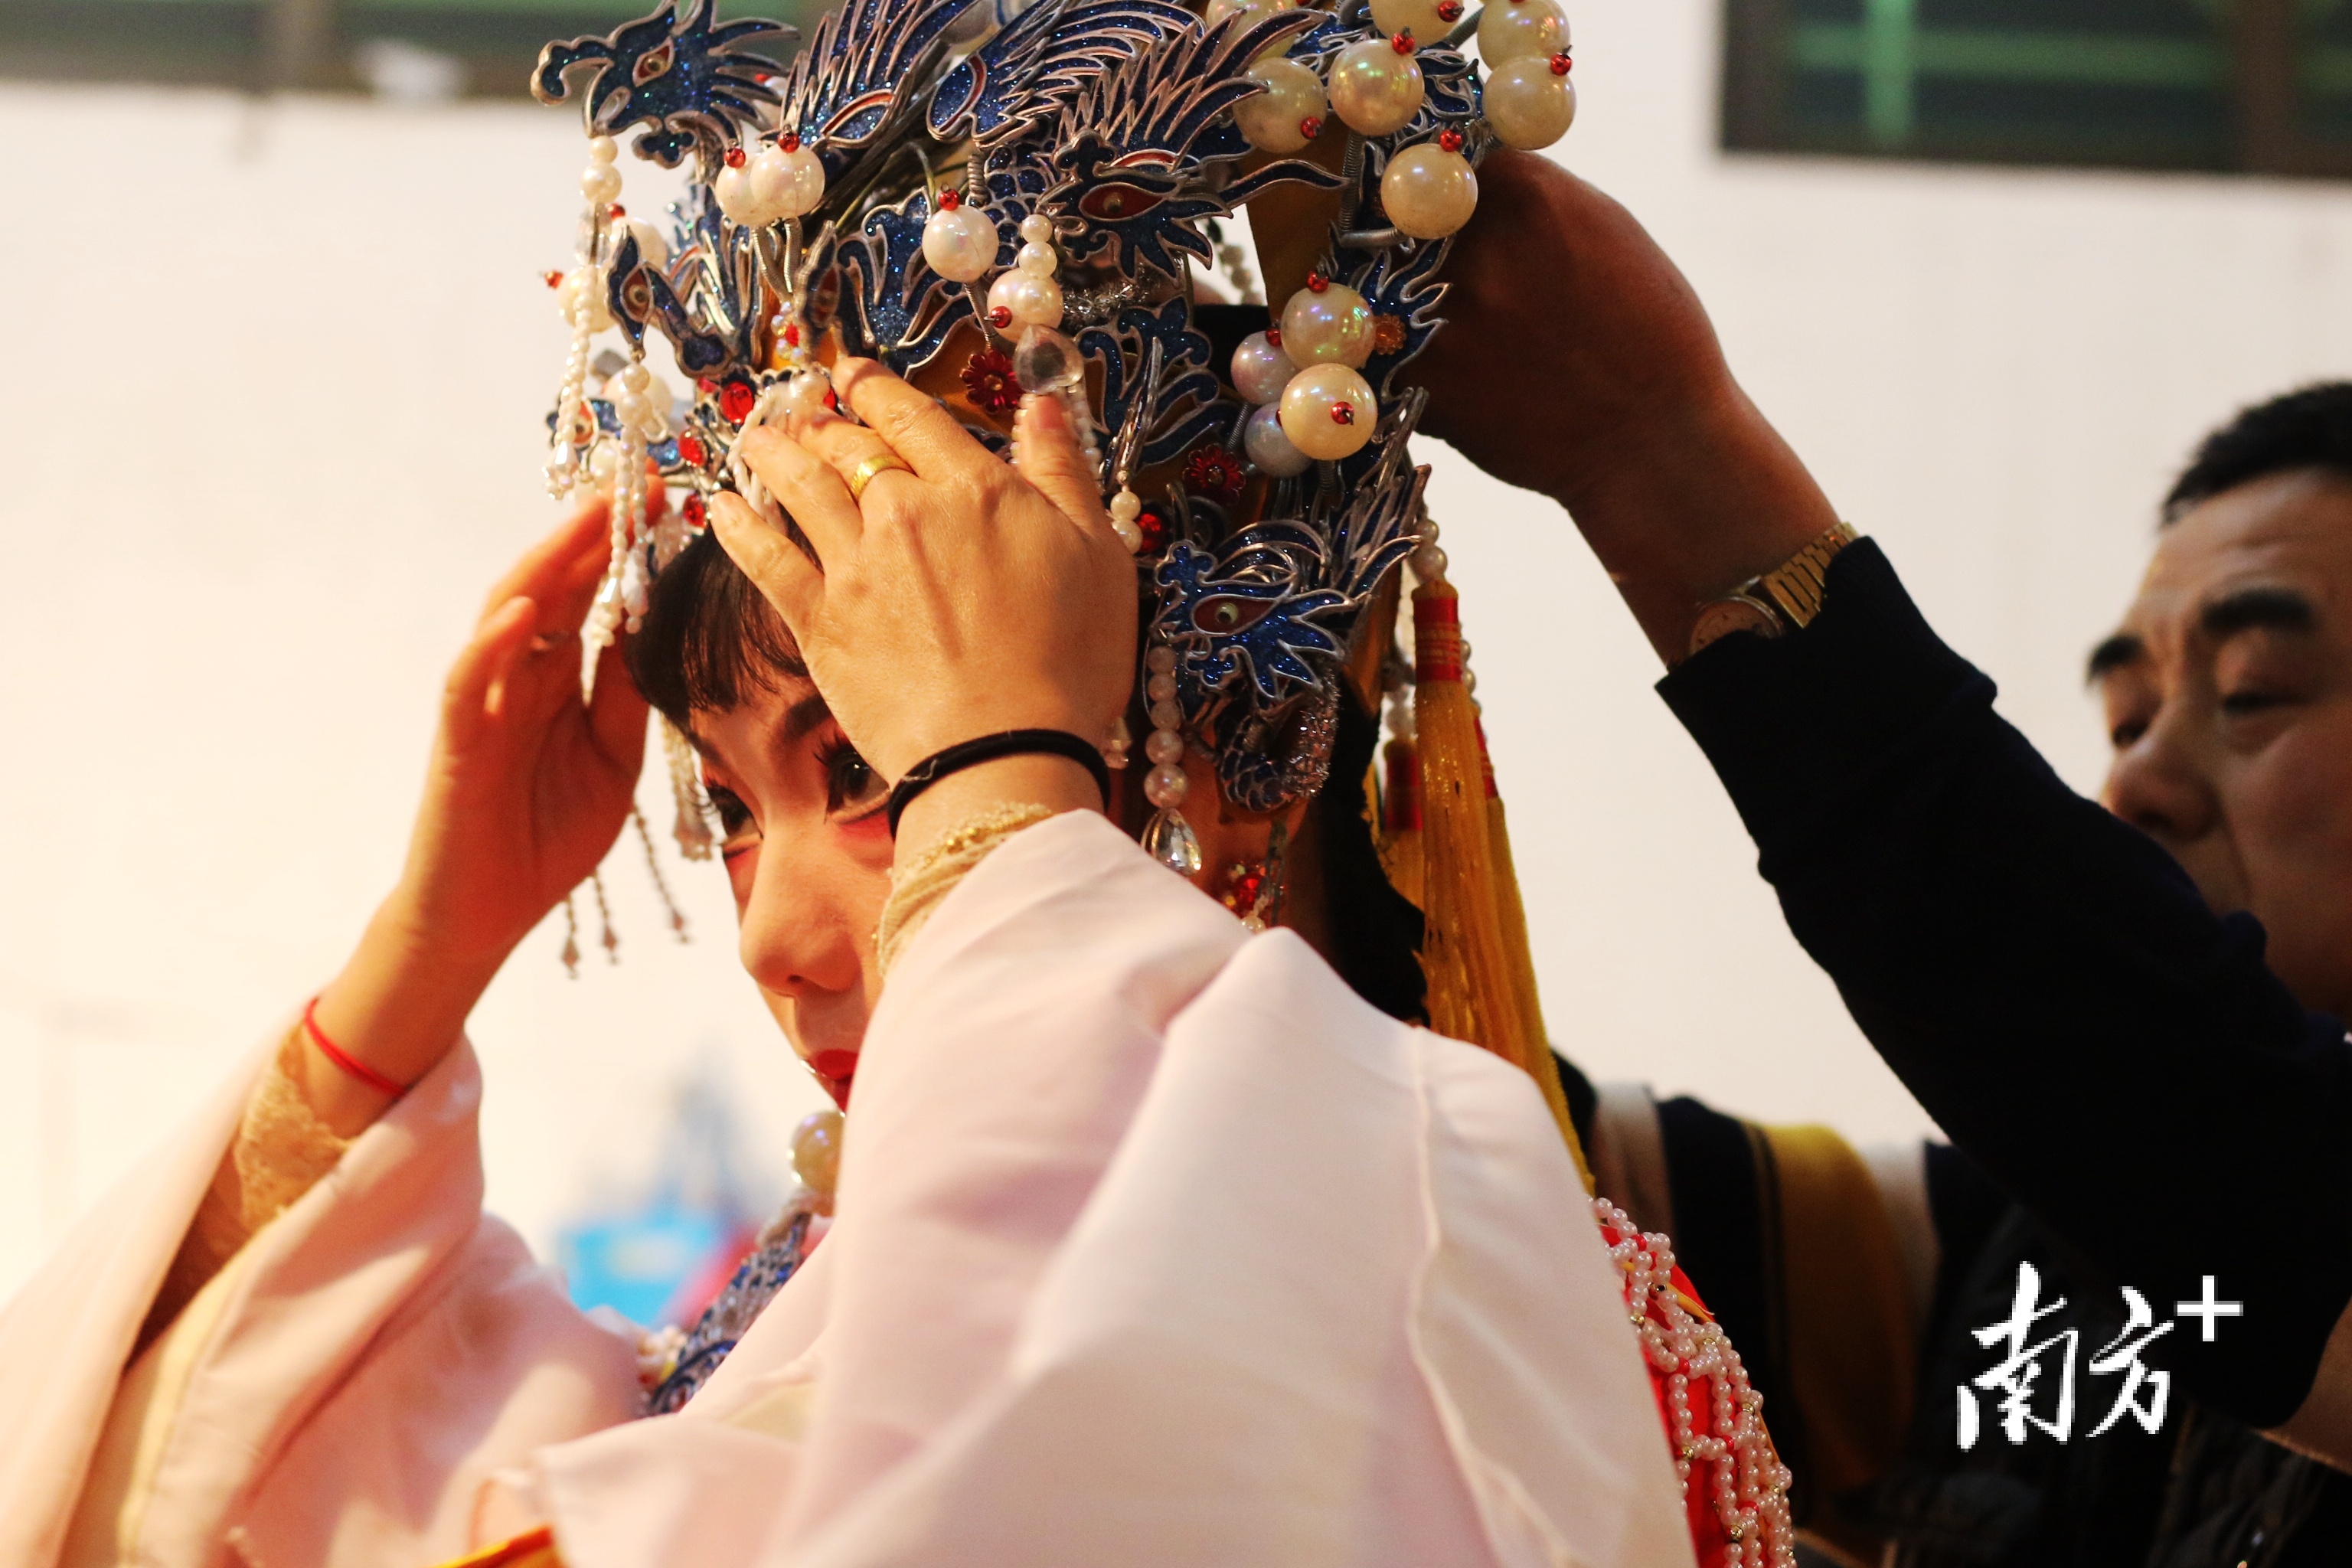 潮剧盔头是传统戏剧角色身份的象征，是潮剧艺术的重要组成部分。